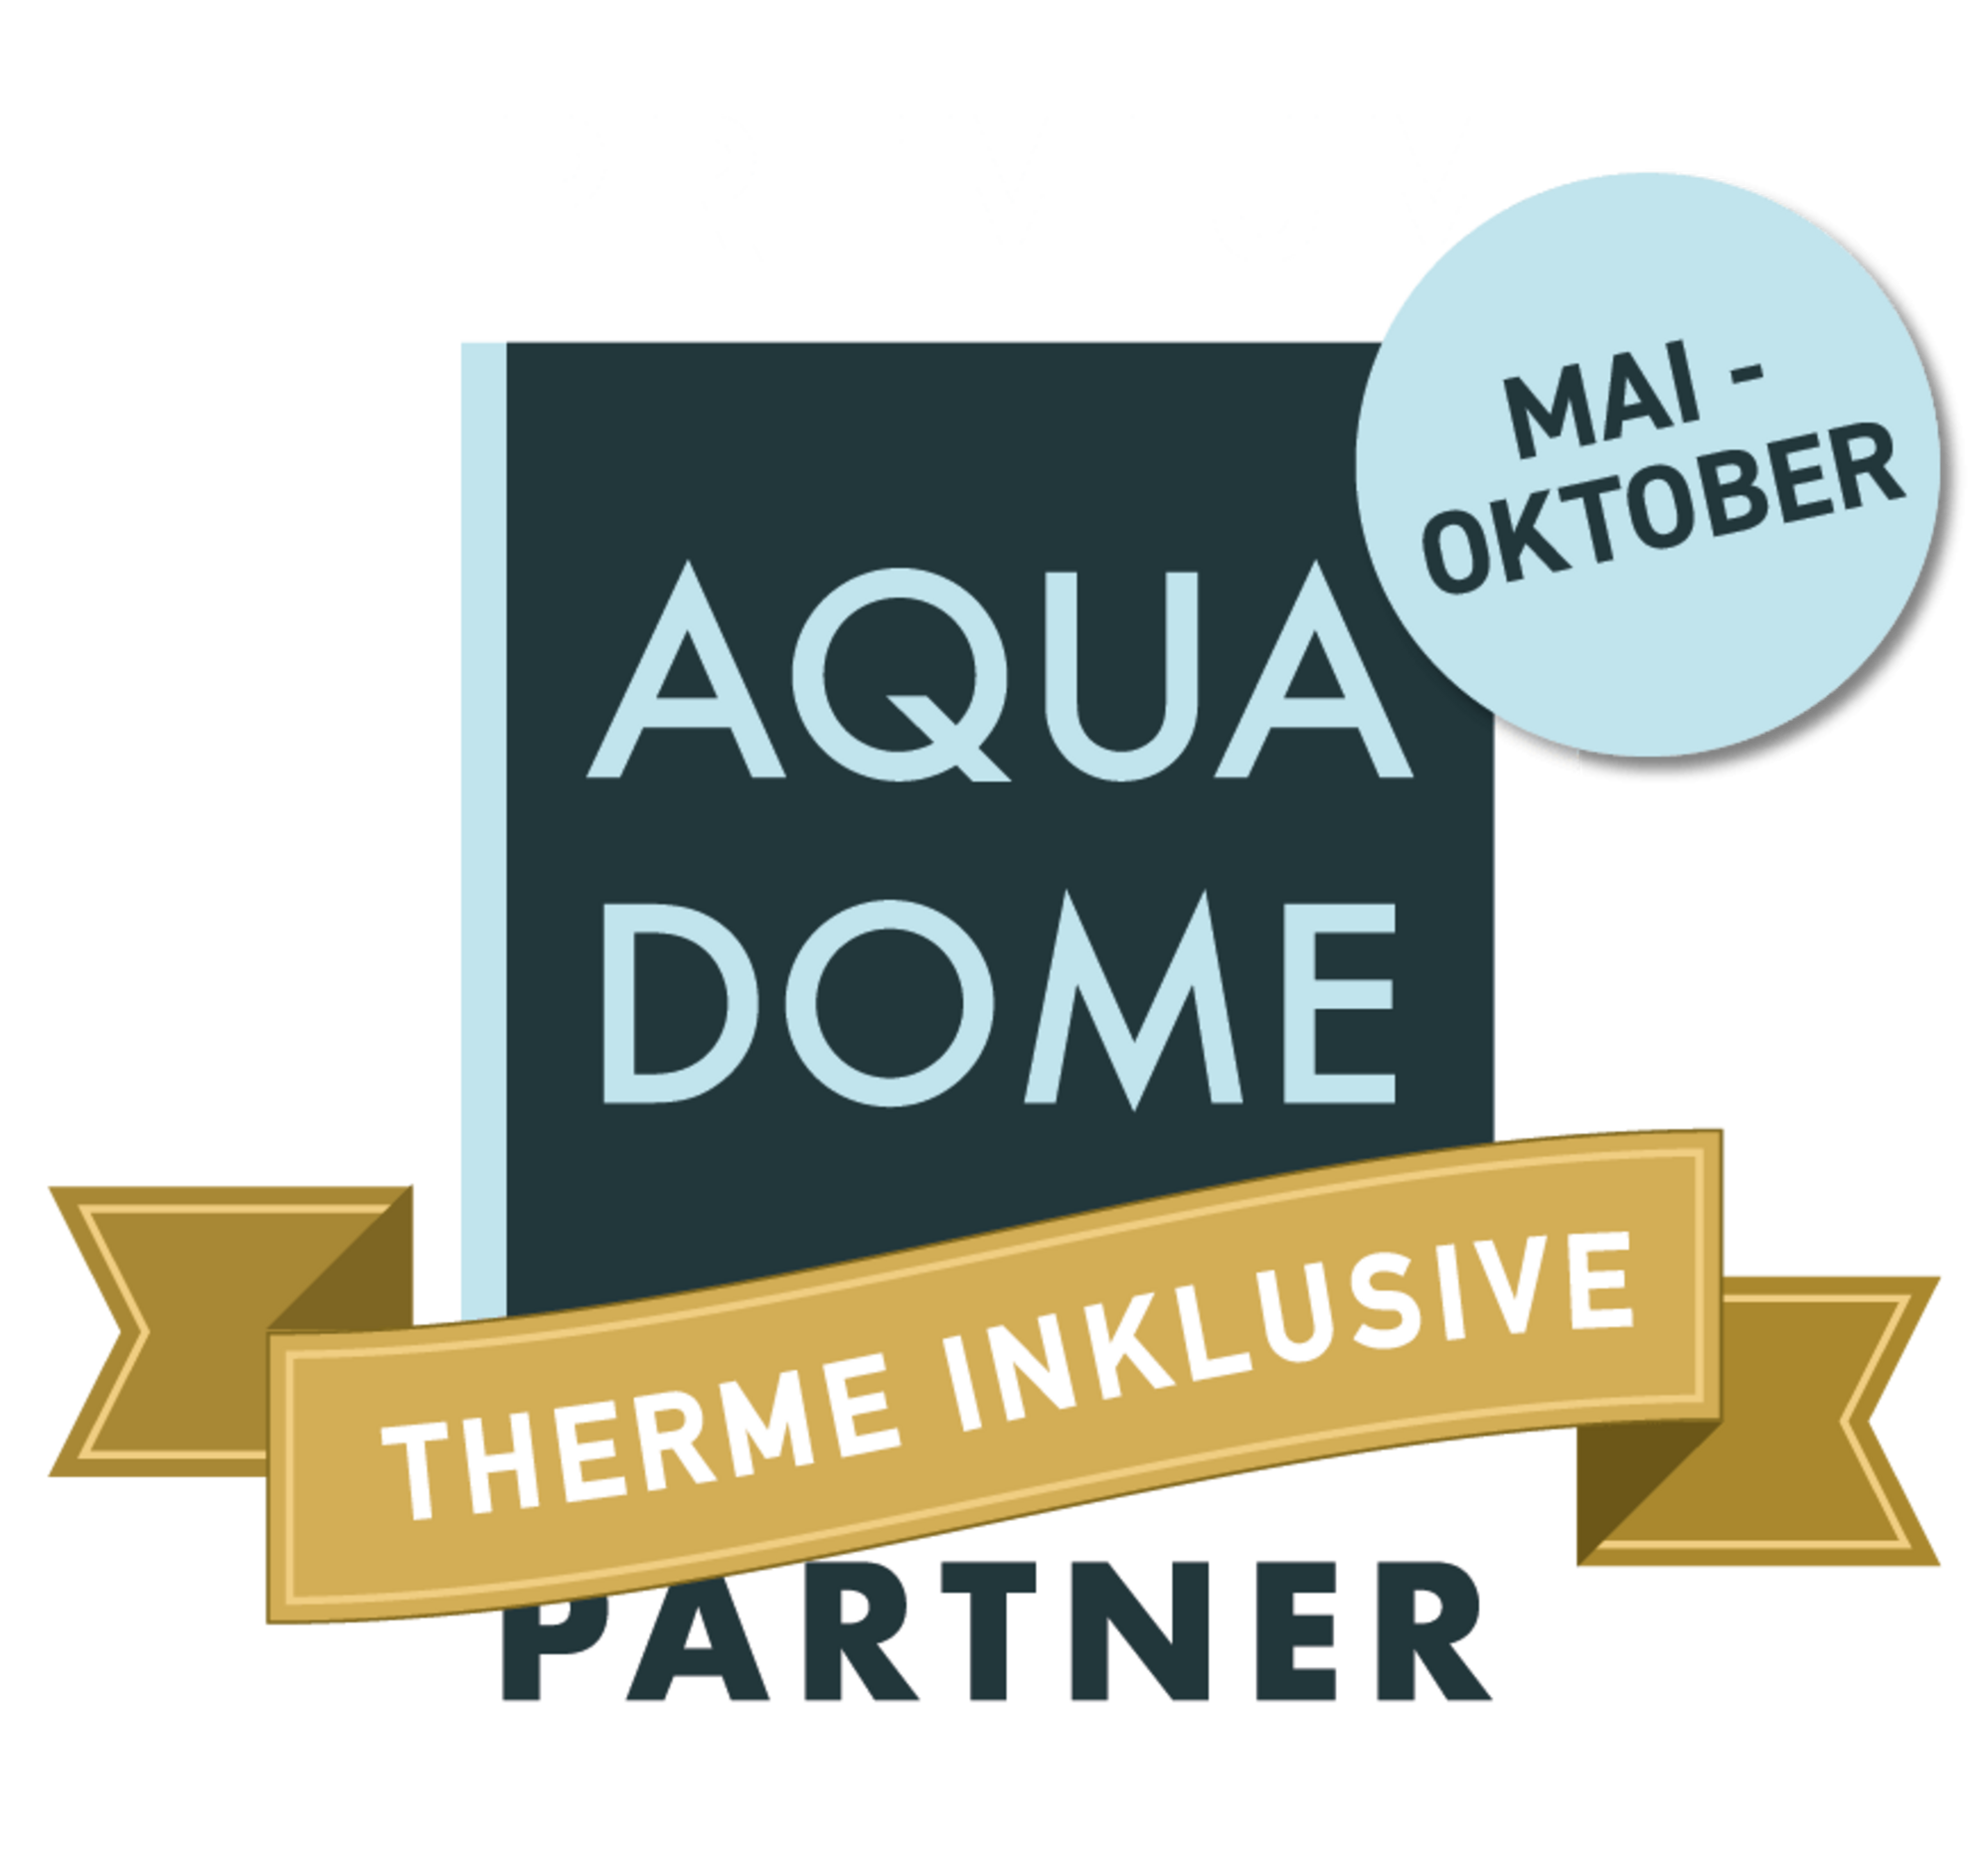 Aqua Dome Premium Partner